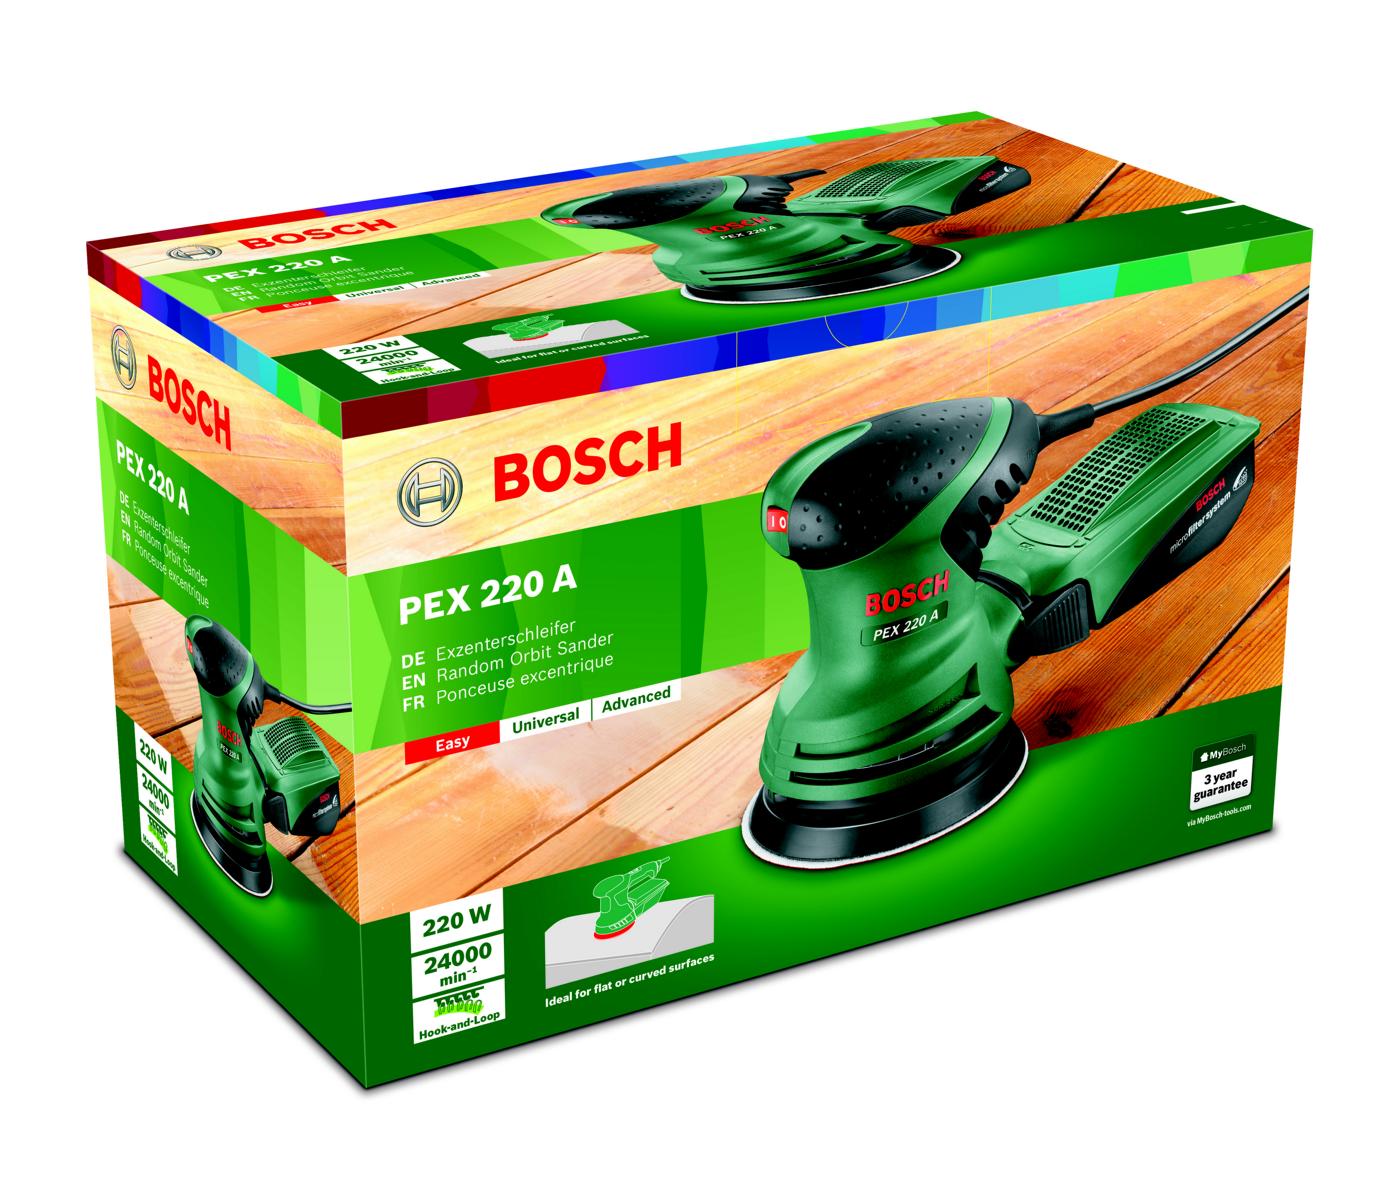 Bosch Exzenterschleifer PEX 220 A